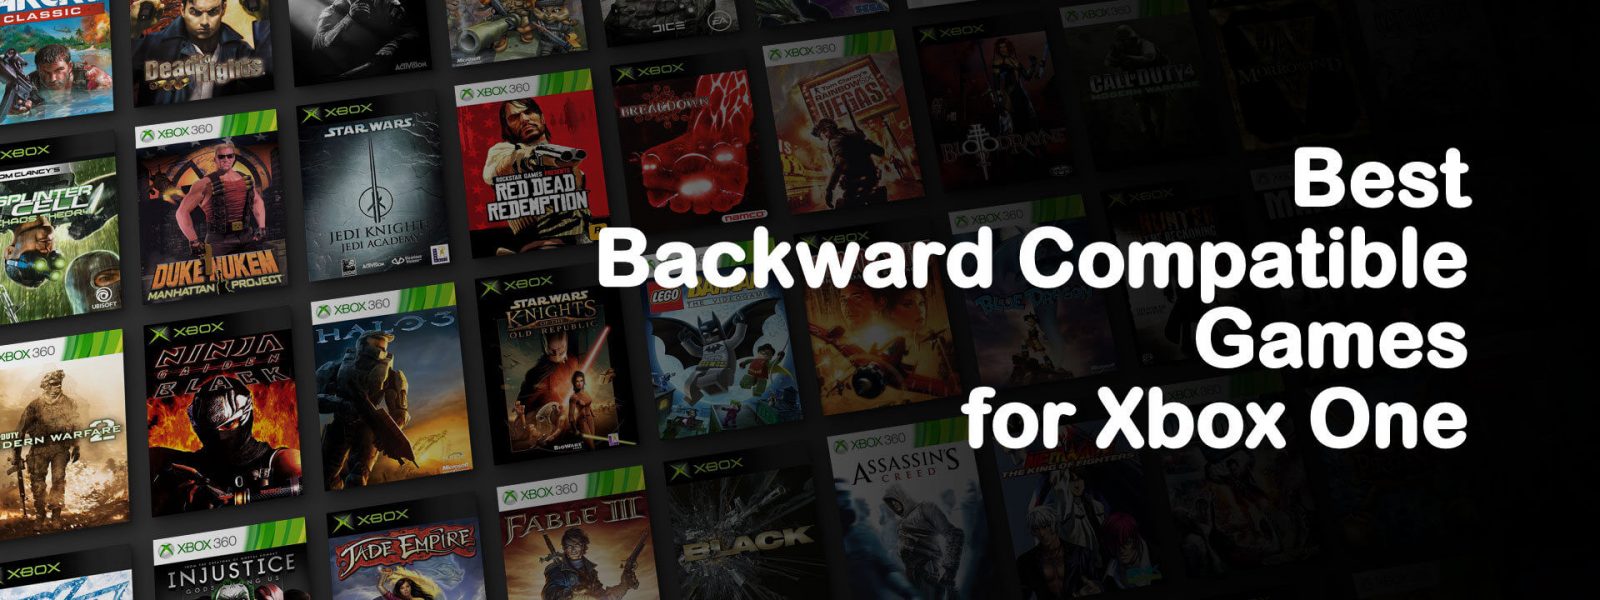 أفضل الألعاب المتوافقة مع الإصدارات السابقة لـ Xbox One